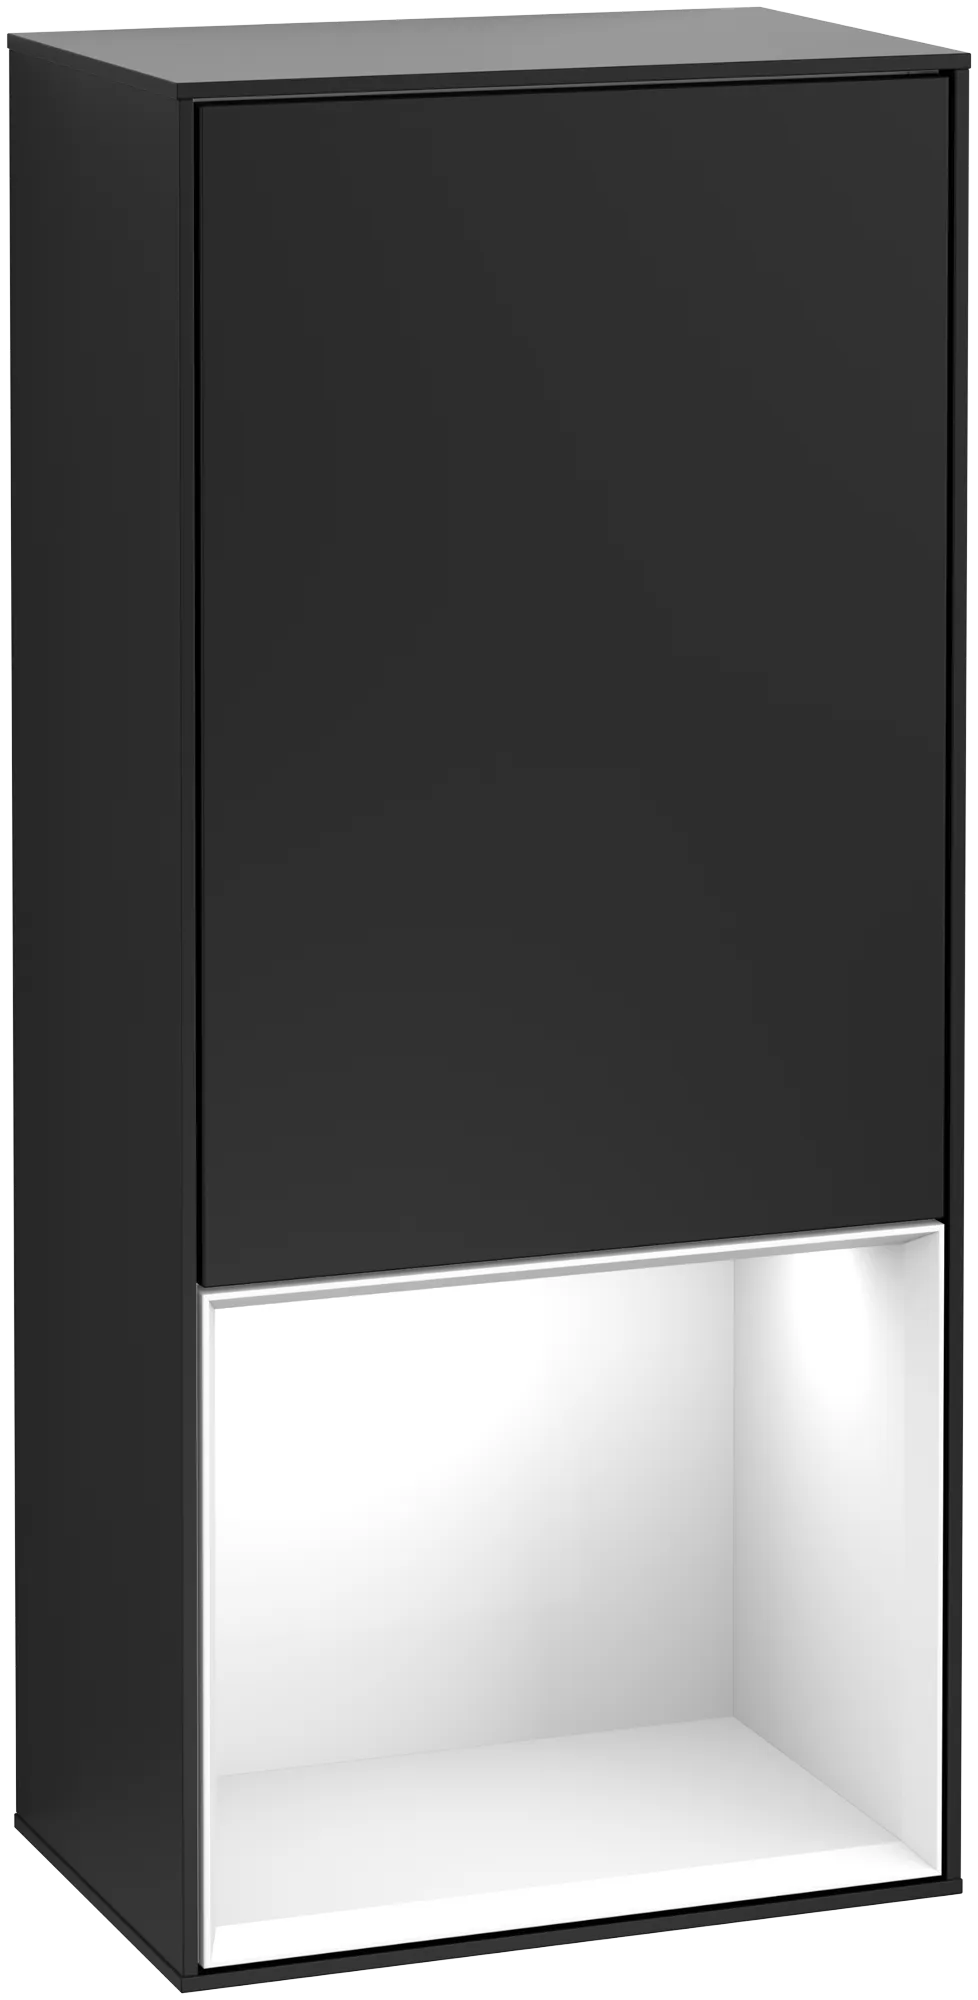 Bild von VILLEROY BOCH Finion Seitenschrank, mit Beleuchtung, 1 Tür, 418 x 936 x 270 mm, Black Matt Lacquer / Glossy White Lacquer #G550GFPD